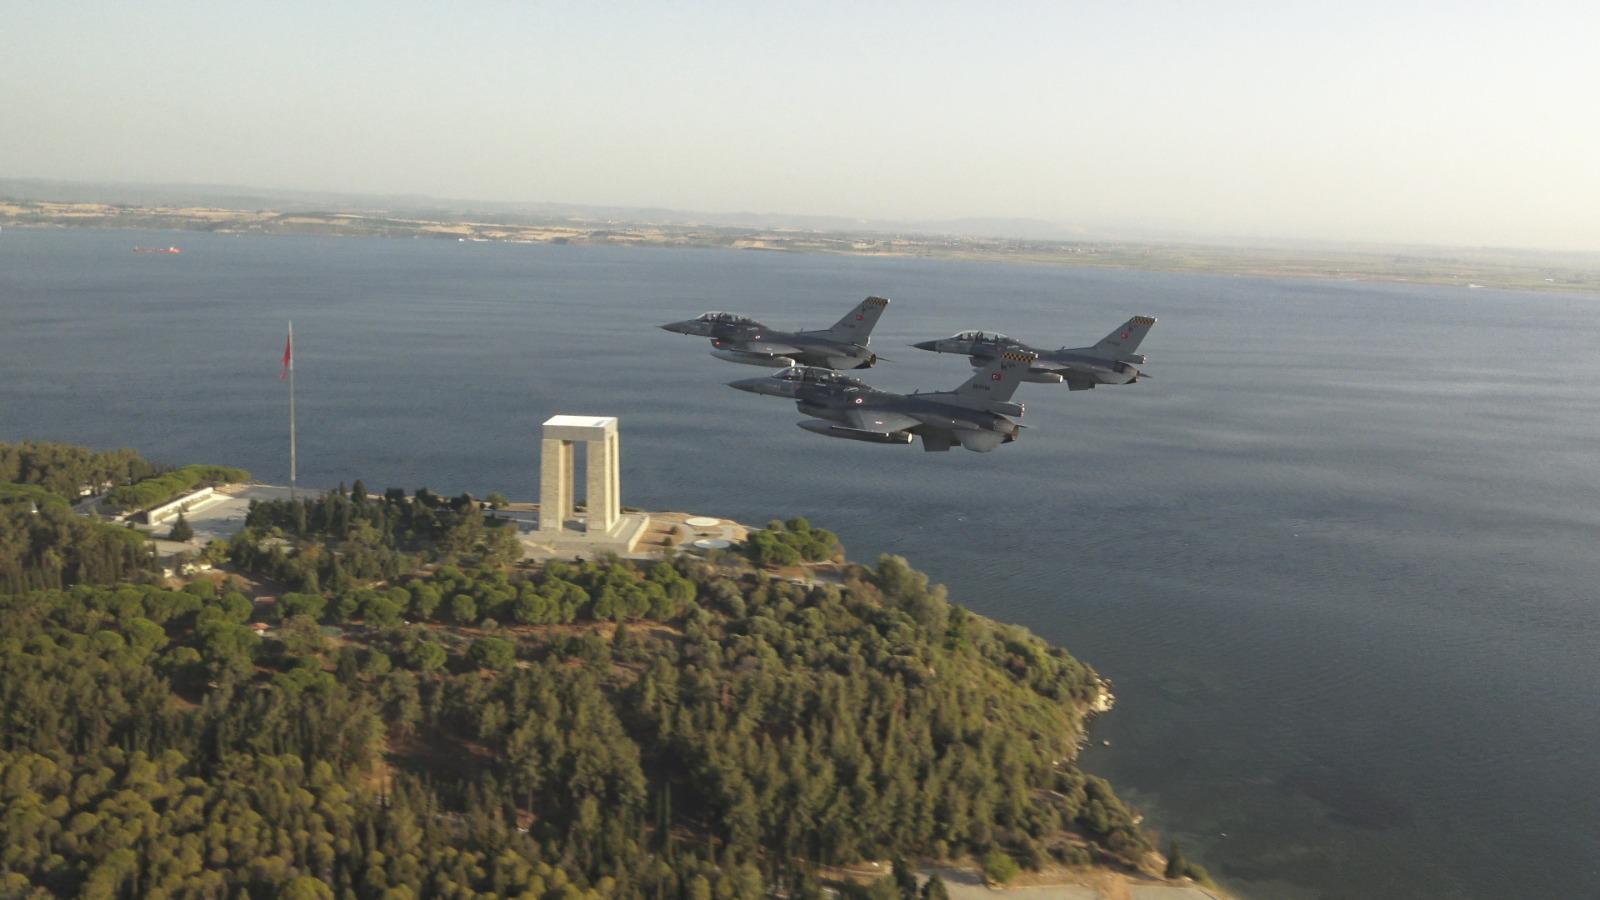 Millî Savunma Bakanı Akar, F-16 İle Ege’nin kuzeyinde uçtu